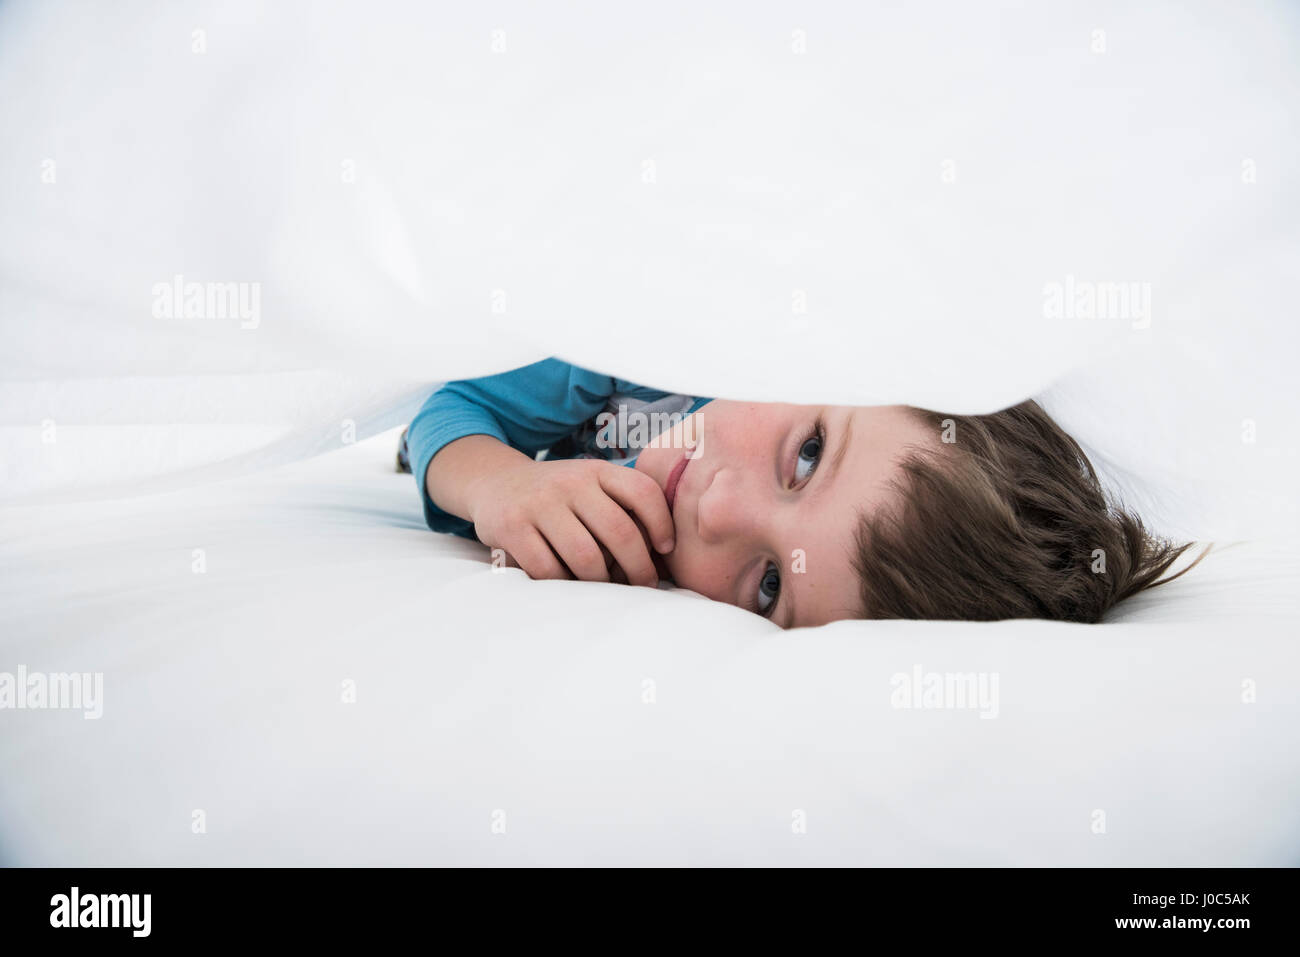 Niño acostado entre sábanas blancas Foto de stock